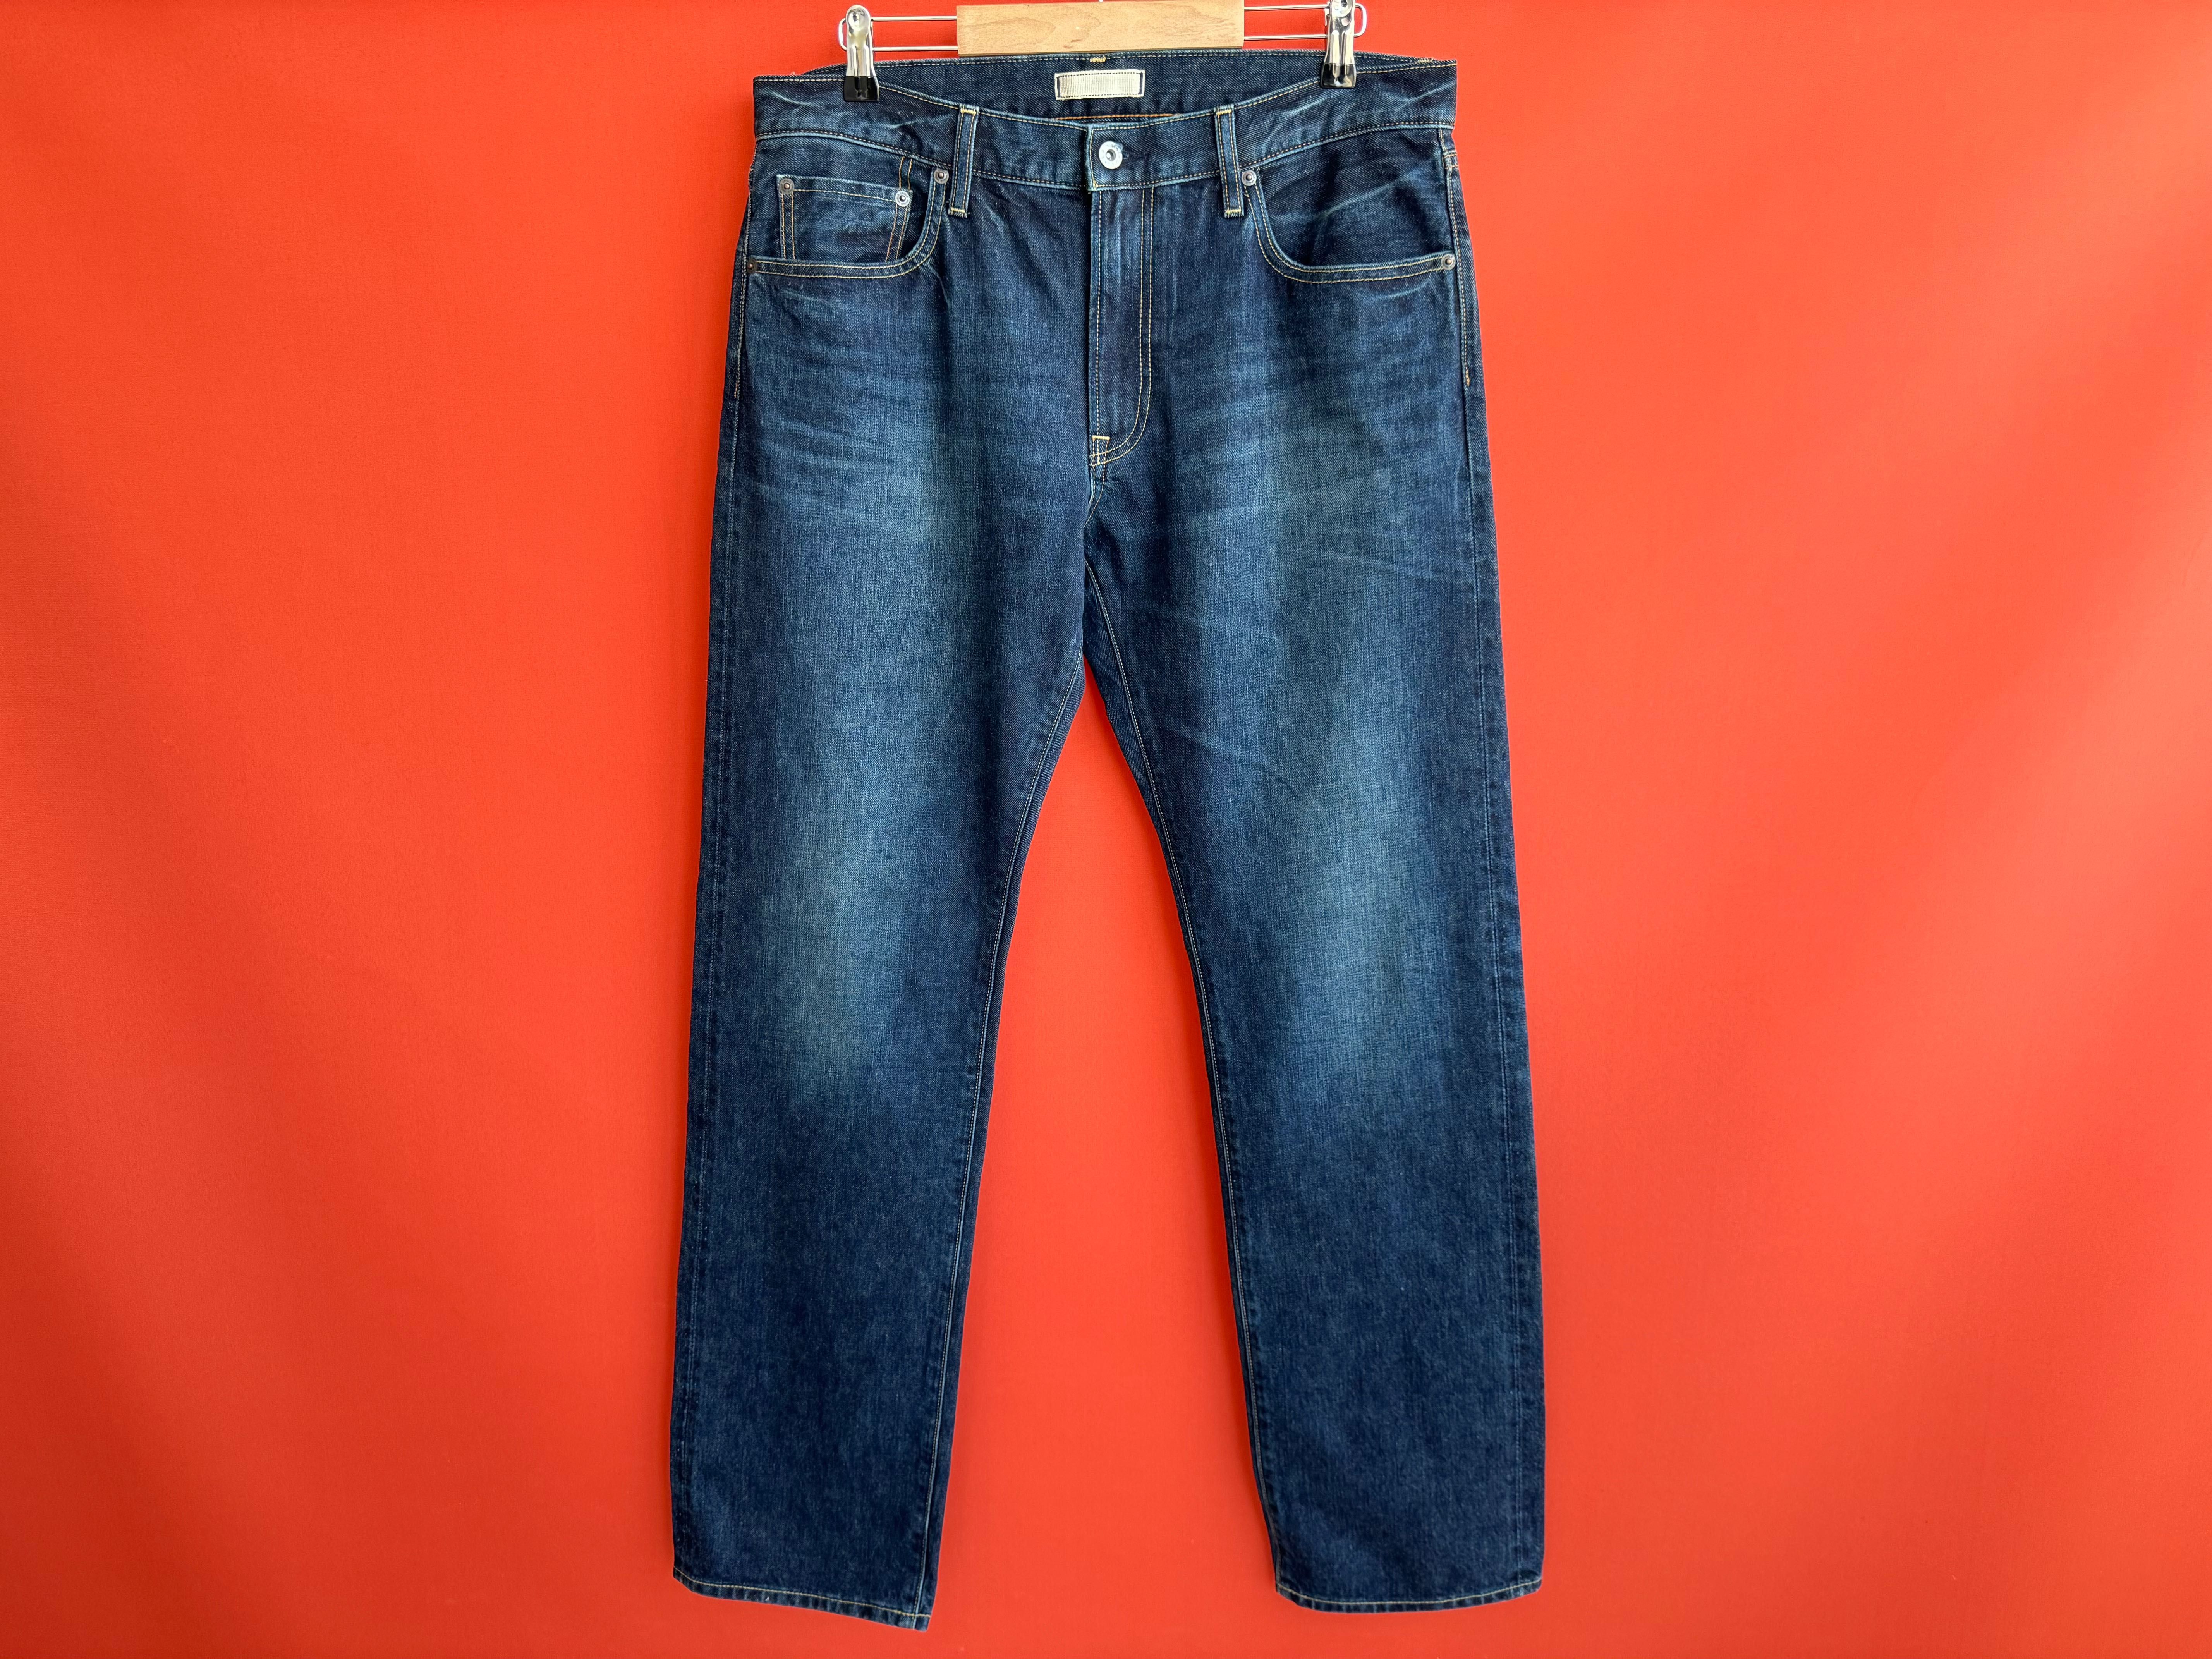 Uniqlo Selvage оригинал мужские джинсы штаны размер 34 Б У